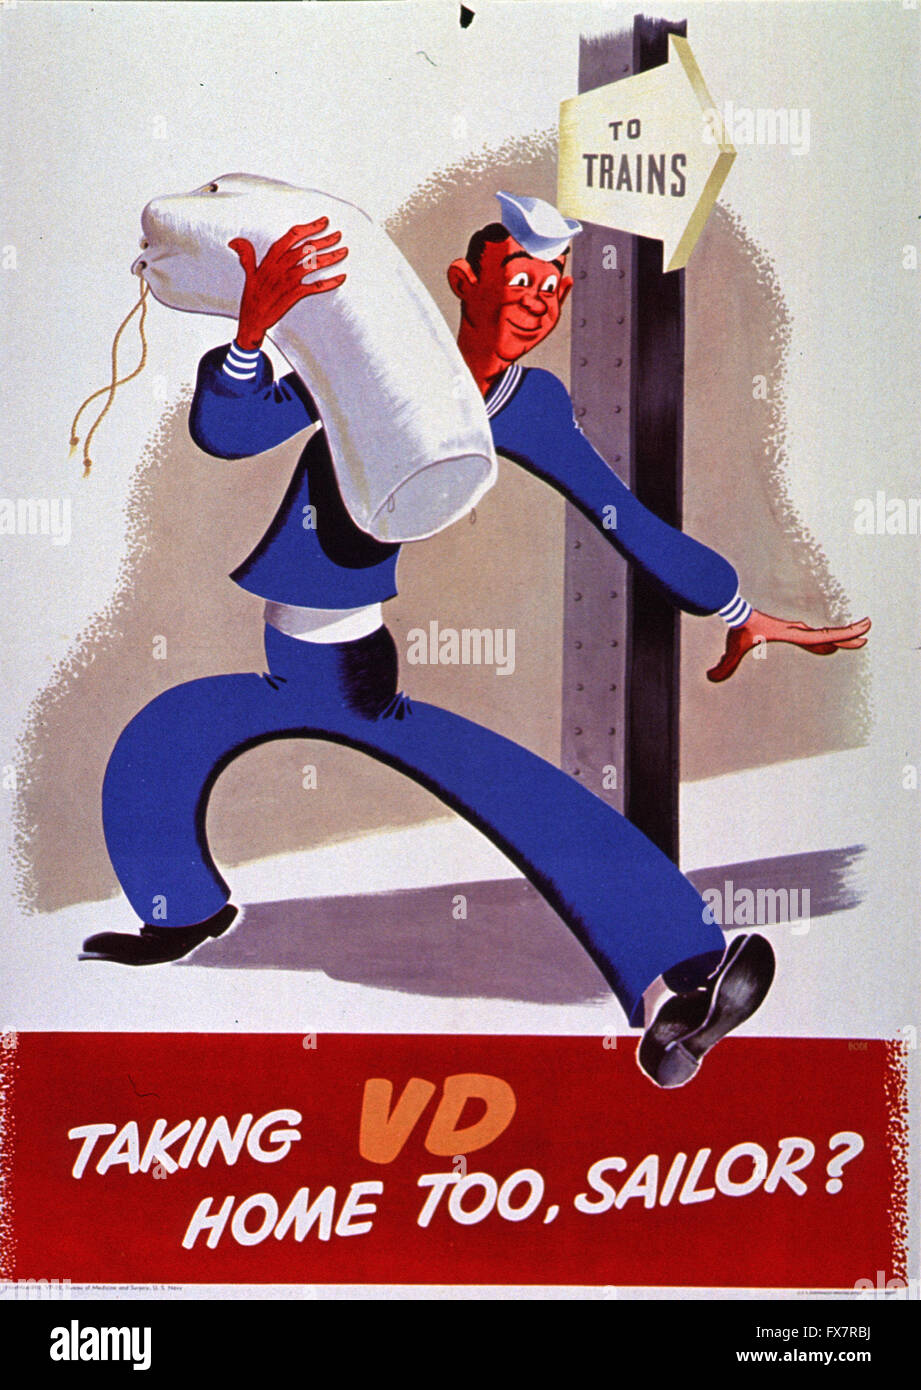 Taking VD Home Sailor?- World War II - U.S propaganda Poster Stock Photo